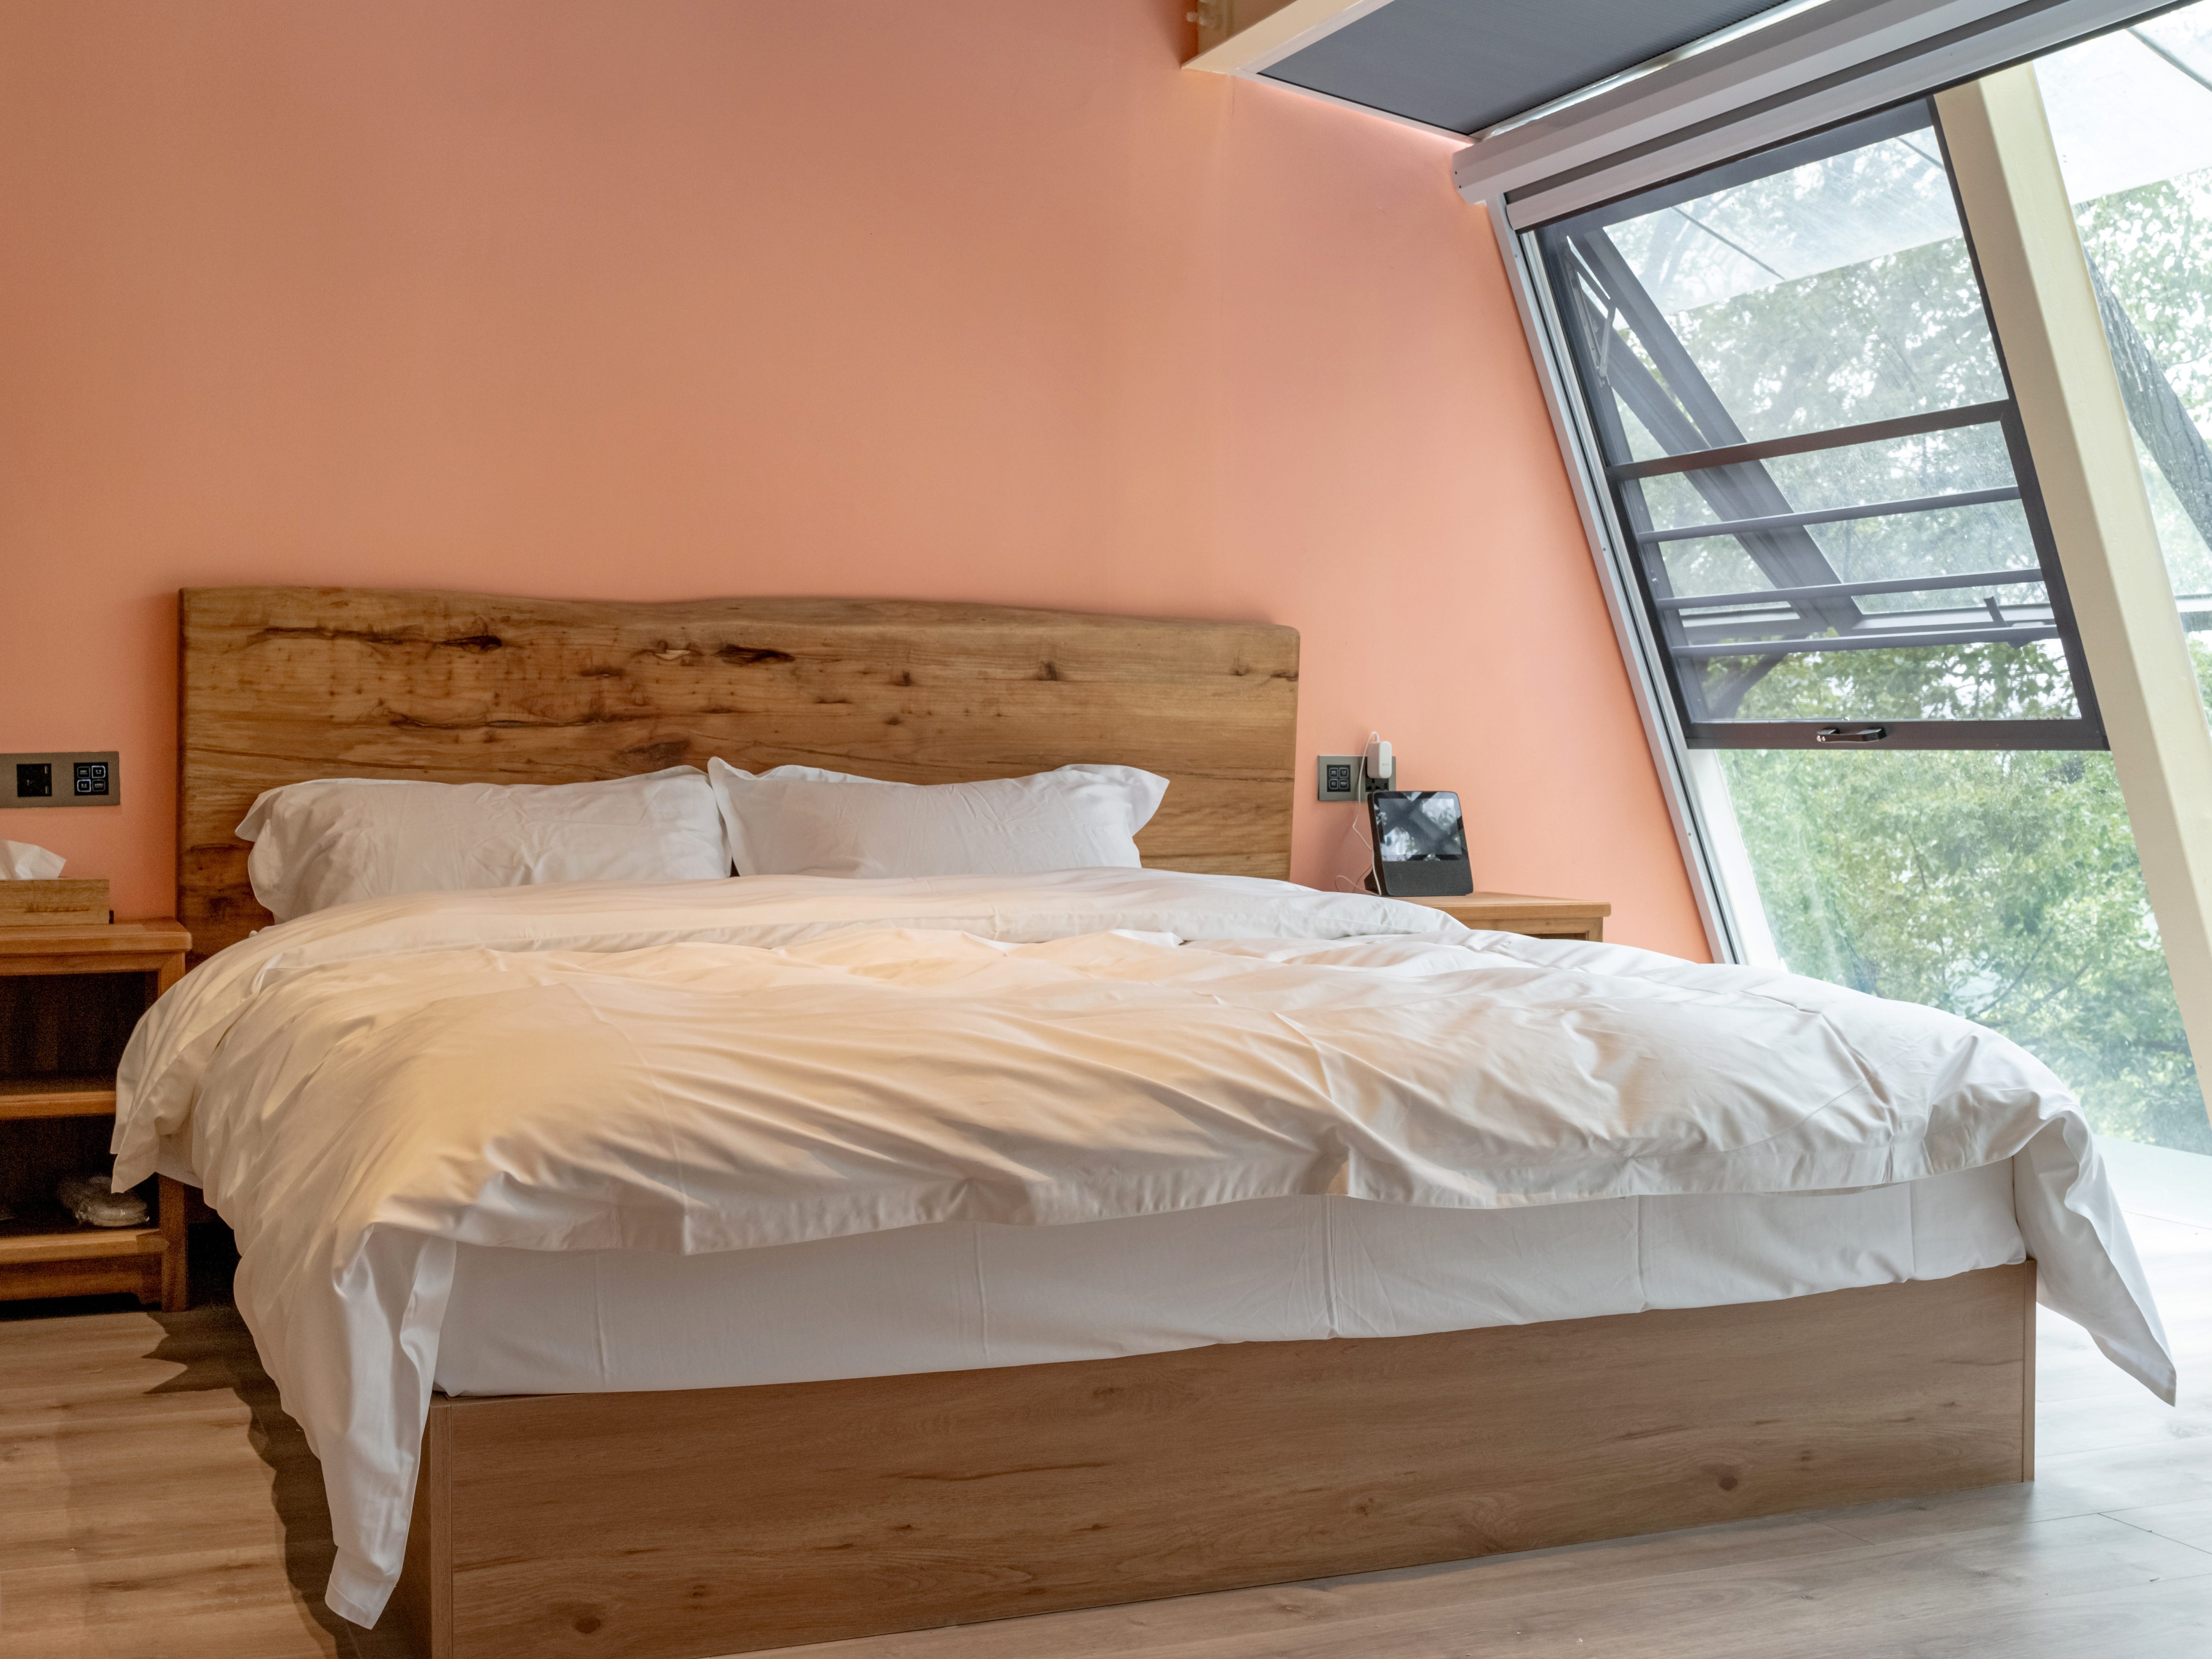 Ein Schlafzimmer mit Korallenwänden, einem raumhohen Fenster und einem Bett mit integriertem Kopfteil aus Holz.